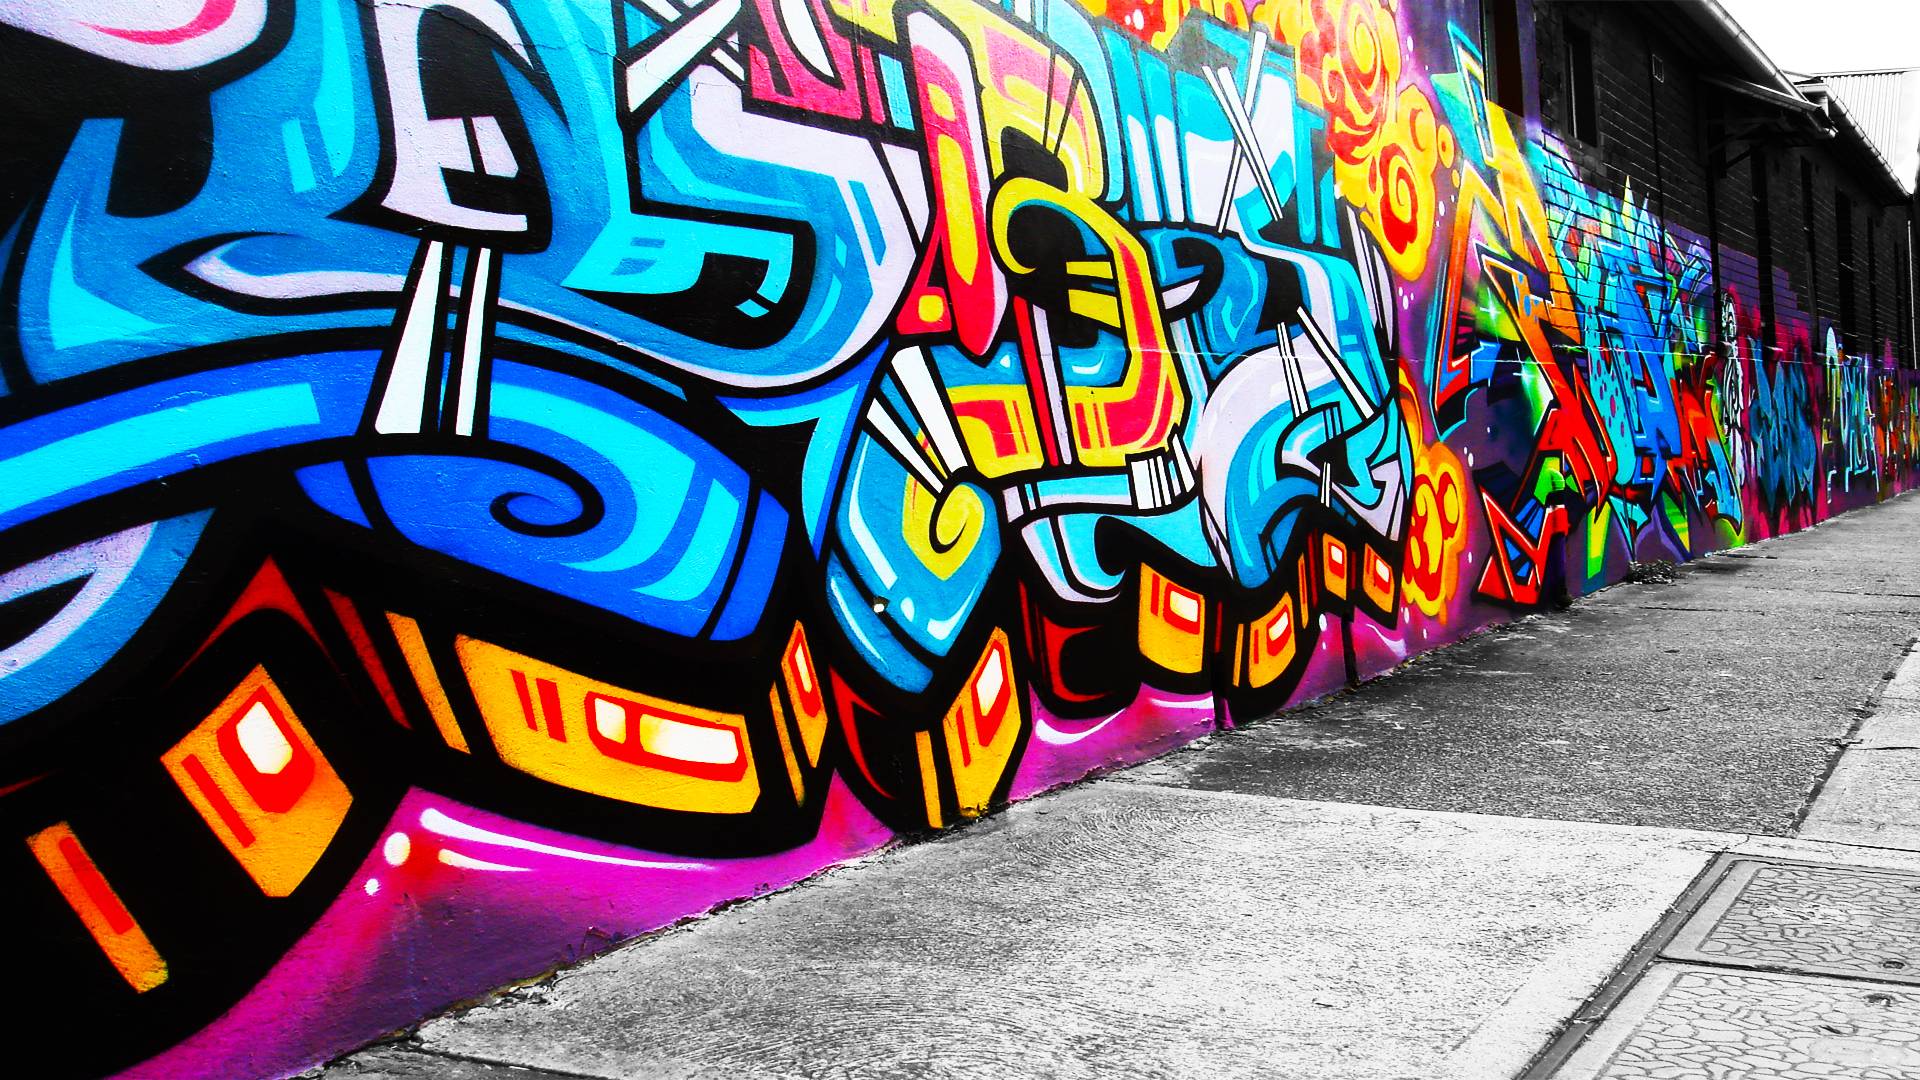 Cool Graffiti Wallpaper. Wallpaper Graffiti Walls. Part